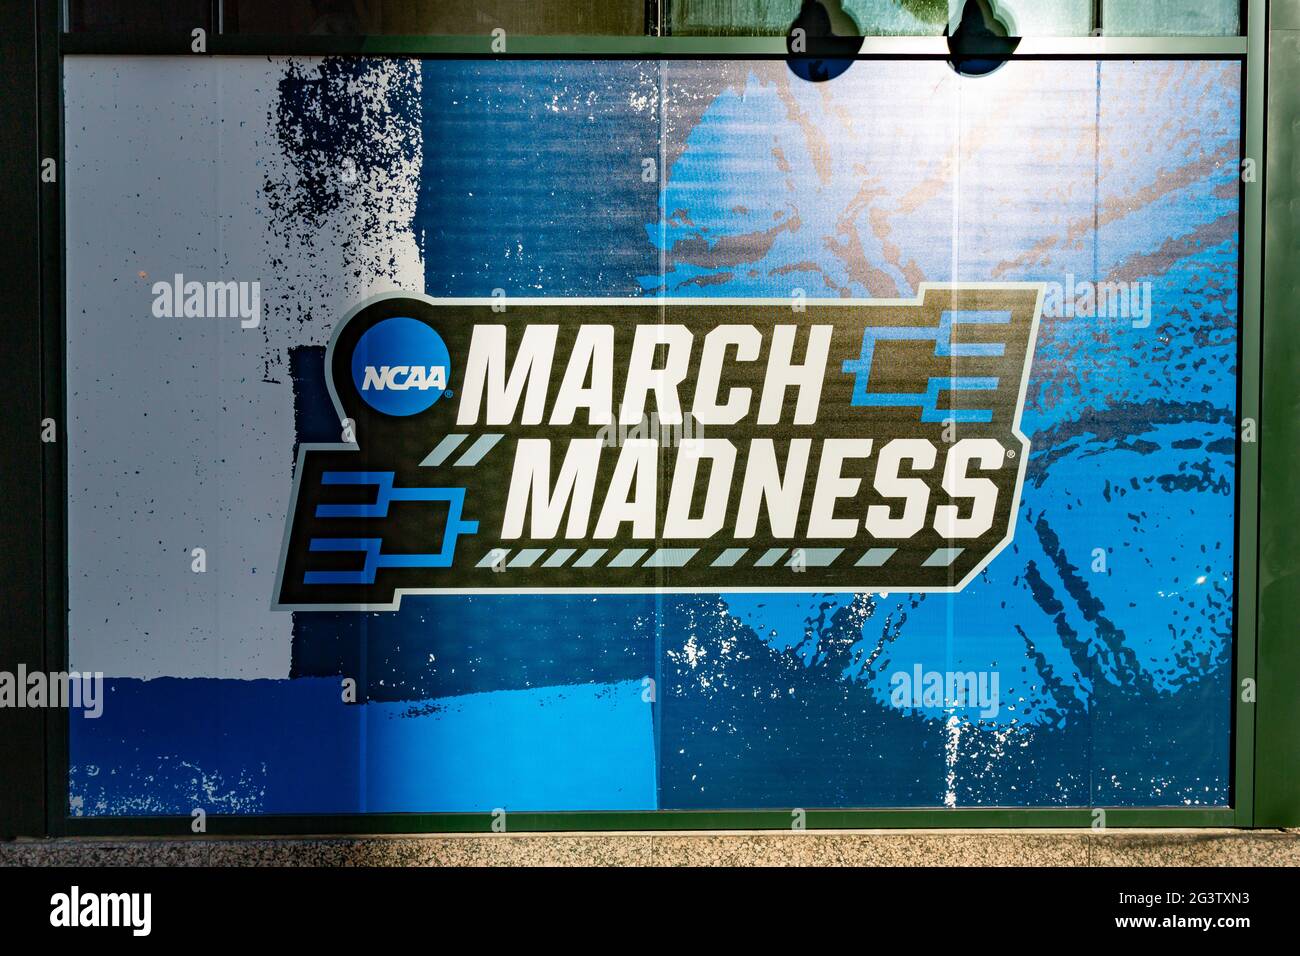 Une affiche illuminée de March Madness dans le centre-ville d'Indianapolis reconnaît le tournoi de basket-ball de l'université NCAA qui a eu lieu dans la ville. Banque D'Images